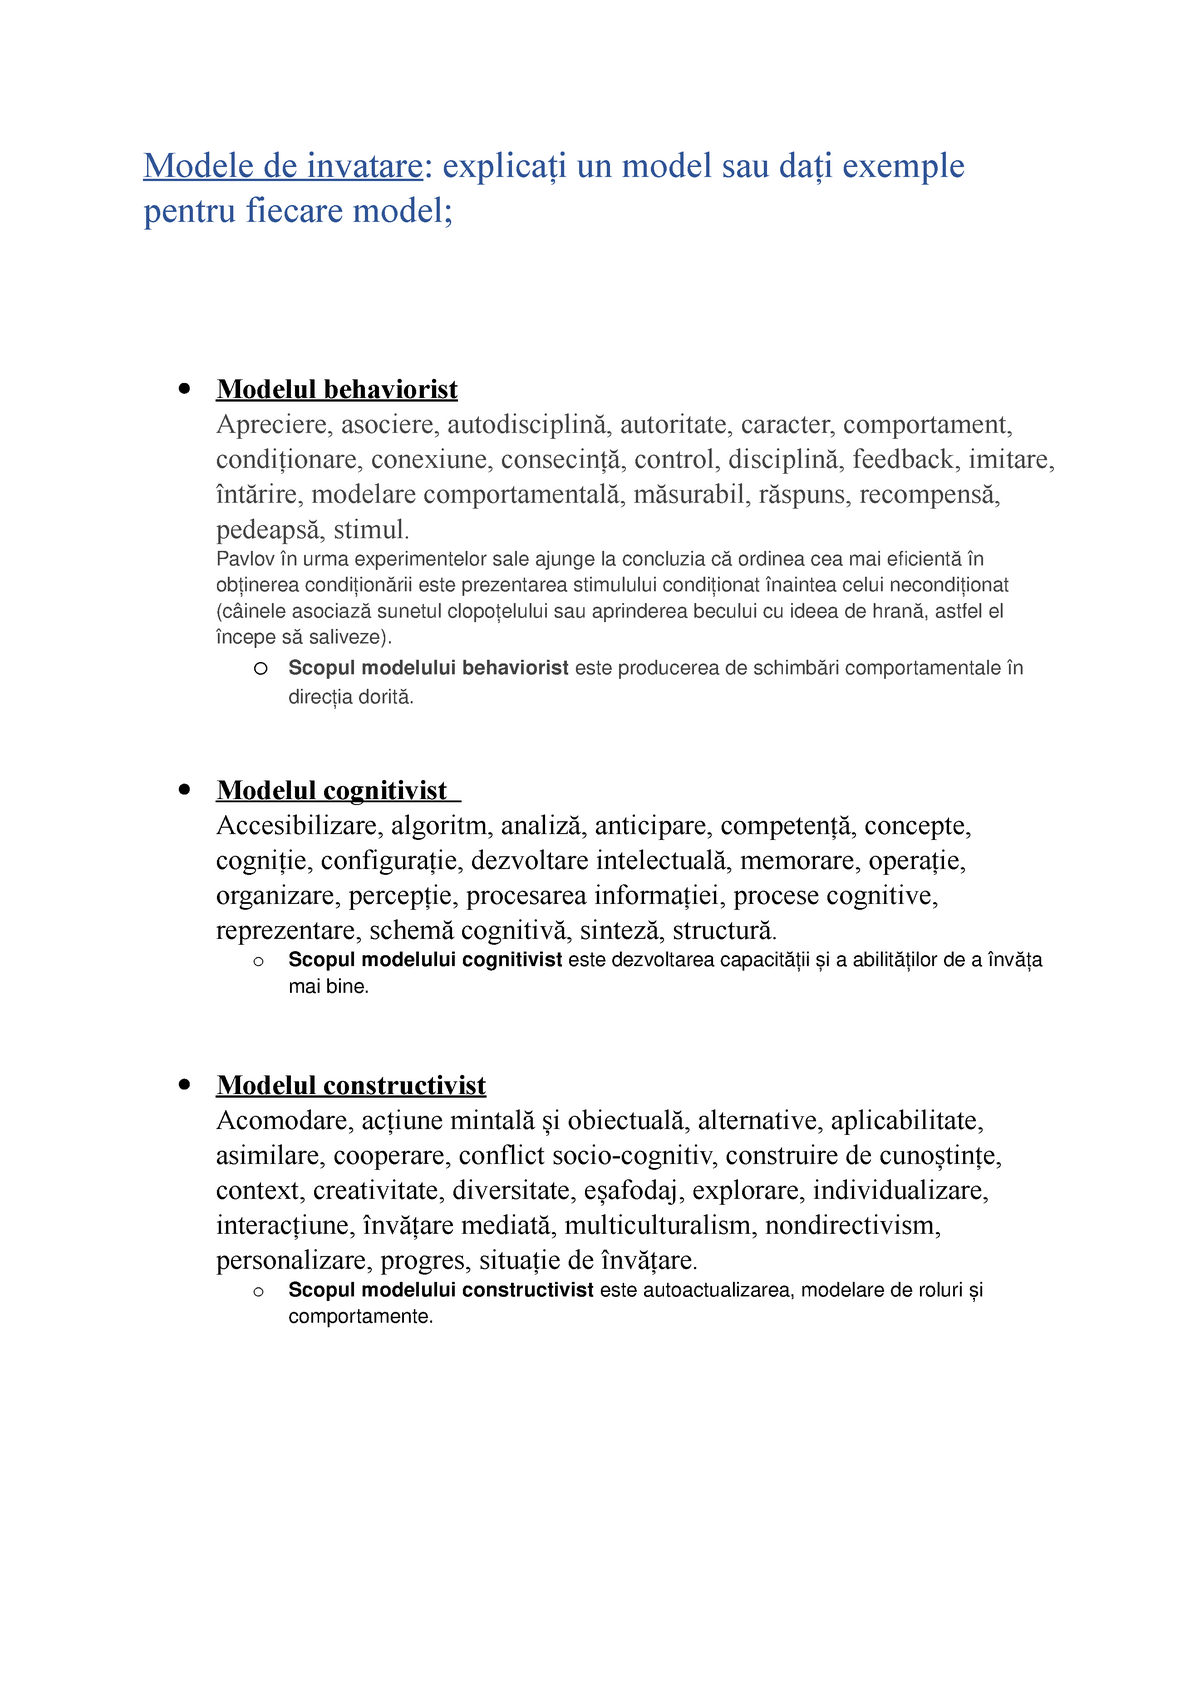 thrill rotary Diacritical Modele de învățare - Grade: A - Modele de invatare: explicați un model sau  dați exemple pentru - Studocu